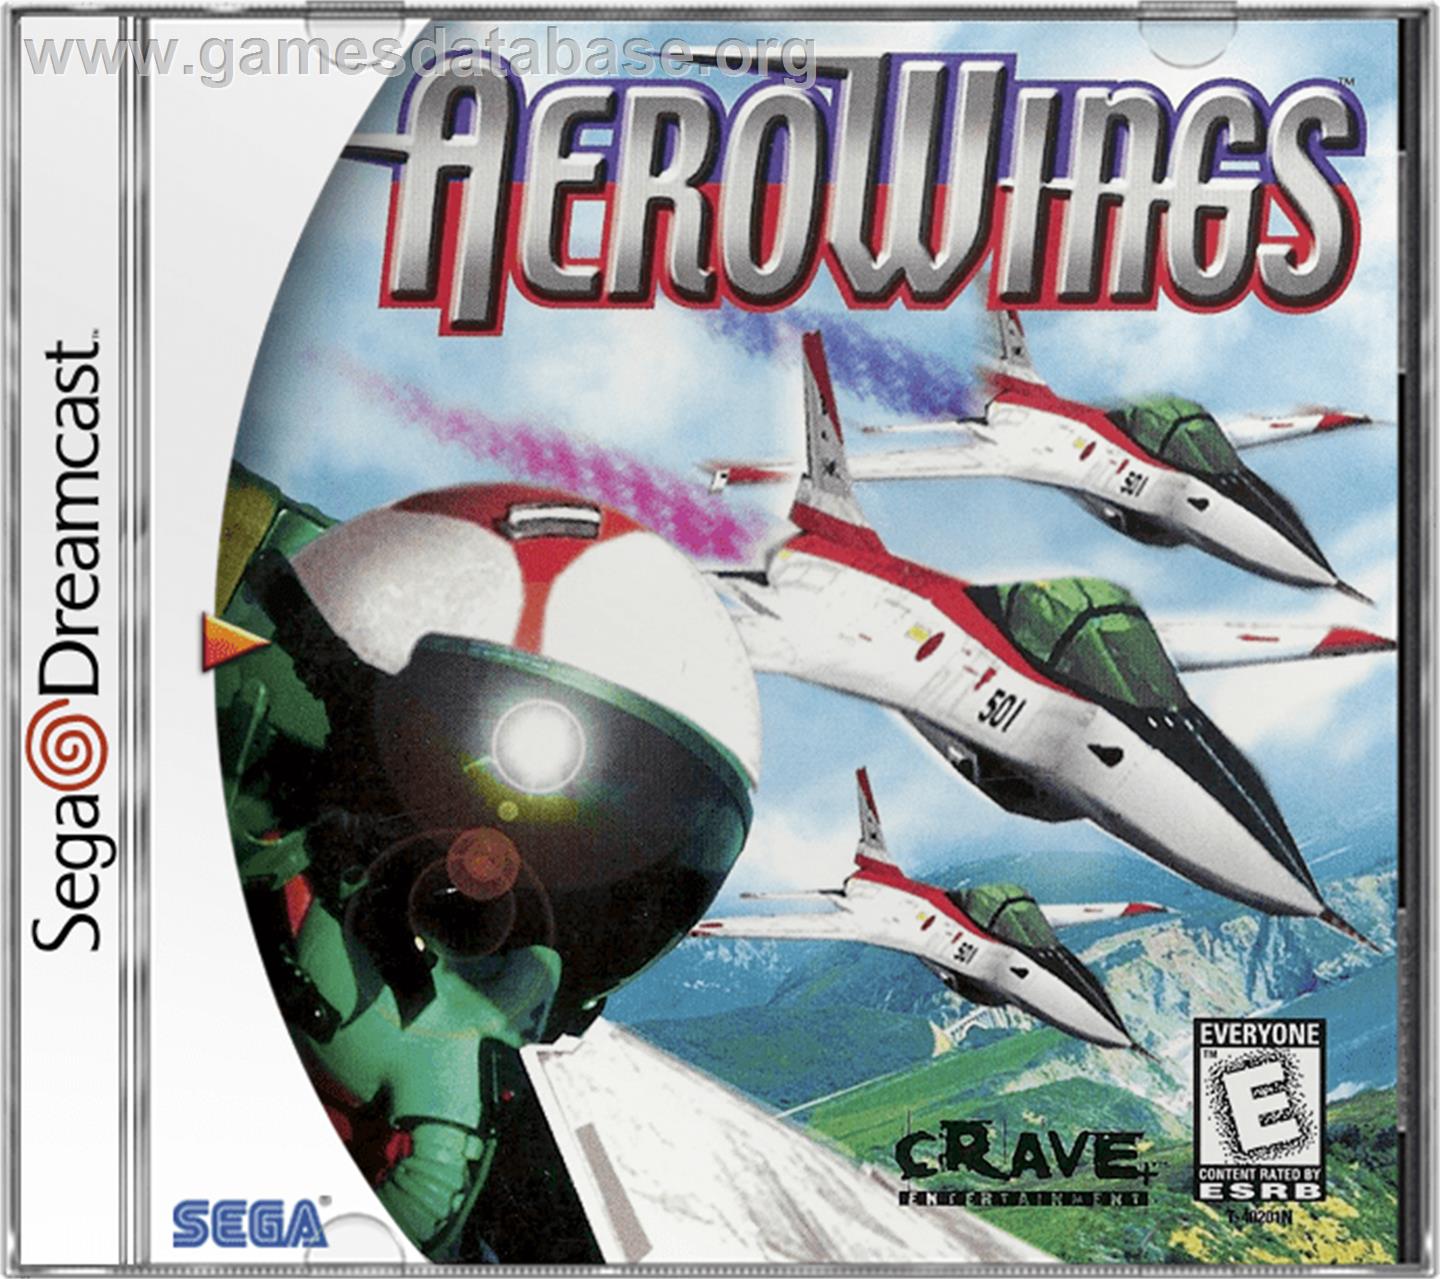 Aerowings - Sega Dreamcast - Artwork - Box